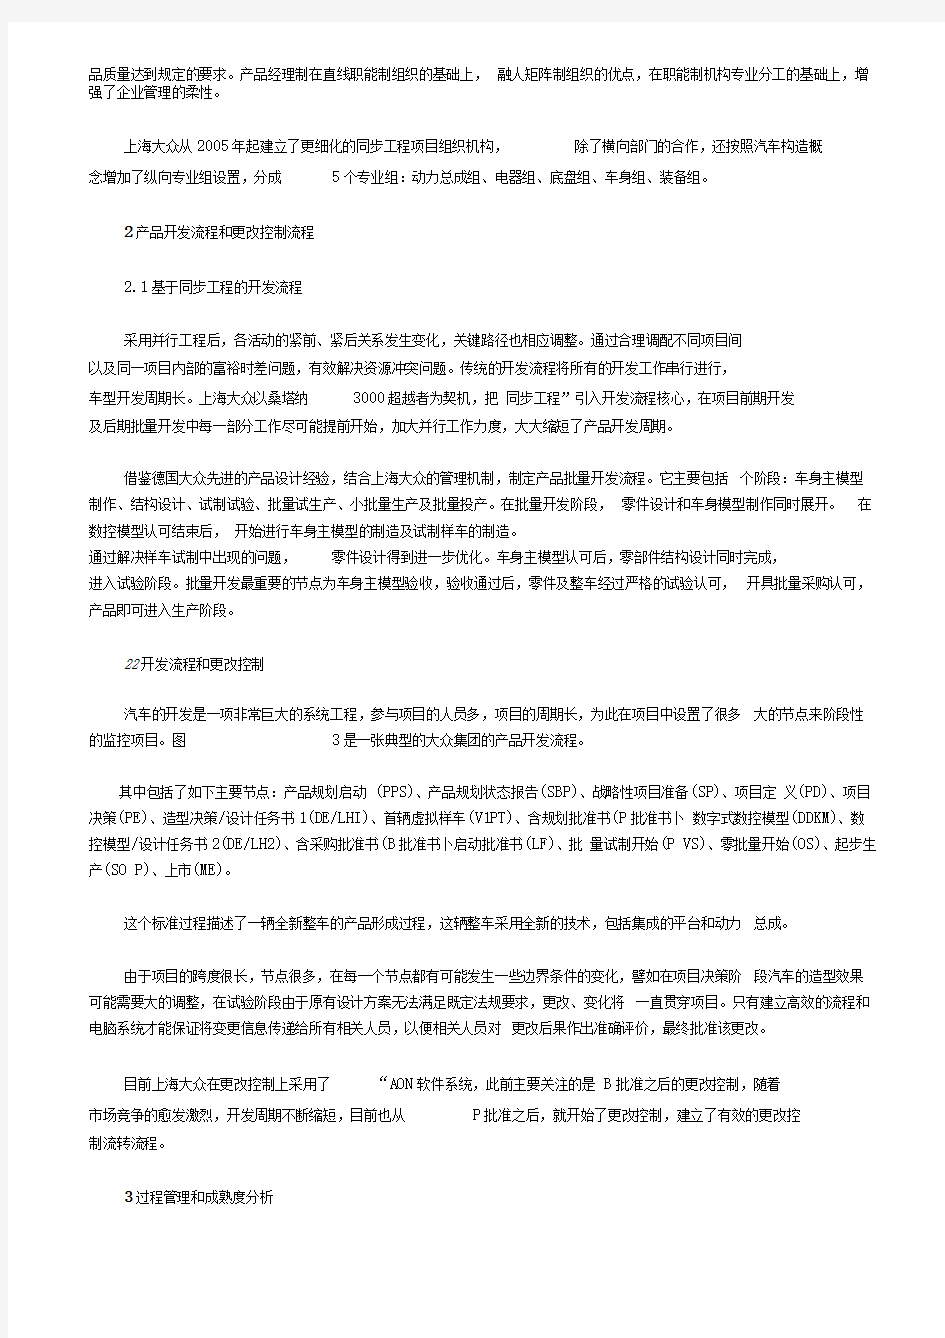 上海大众公司的产品开发项目流程管理案例